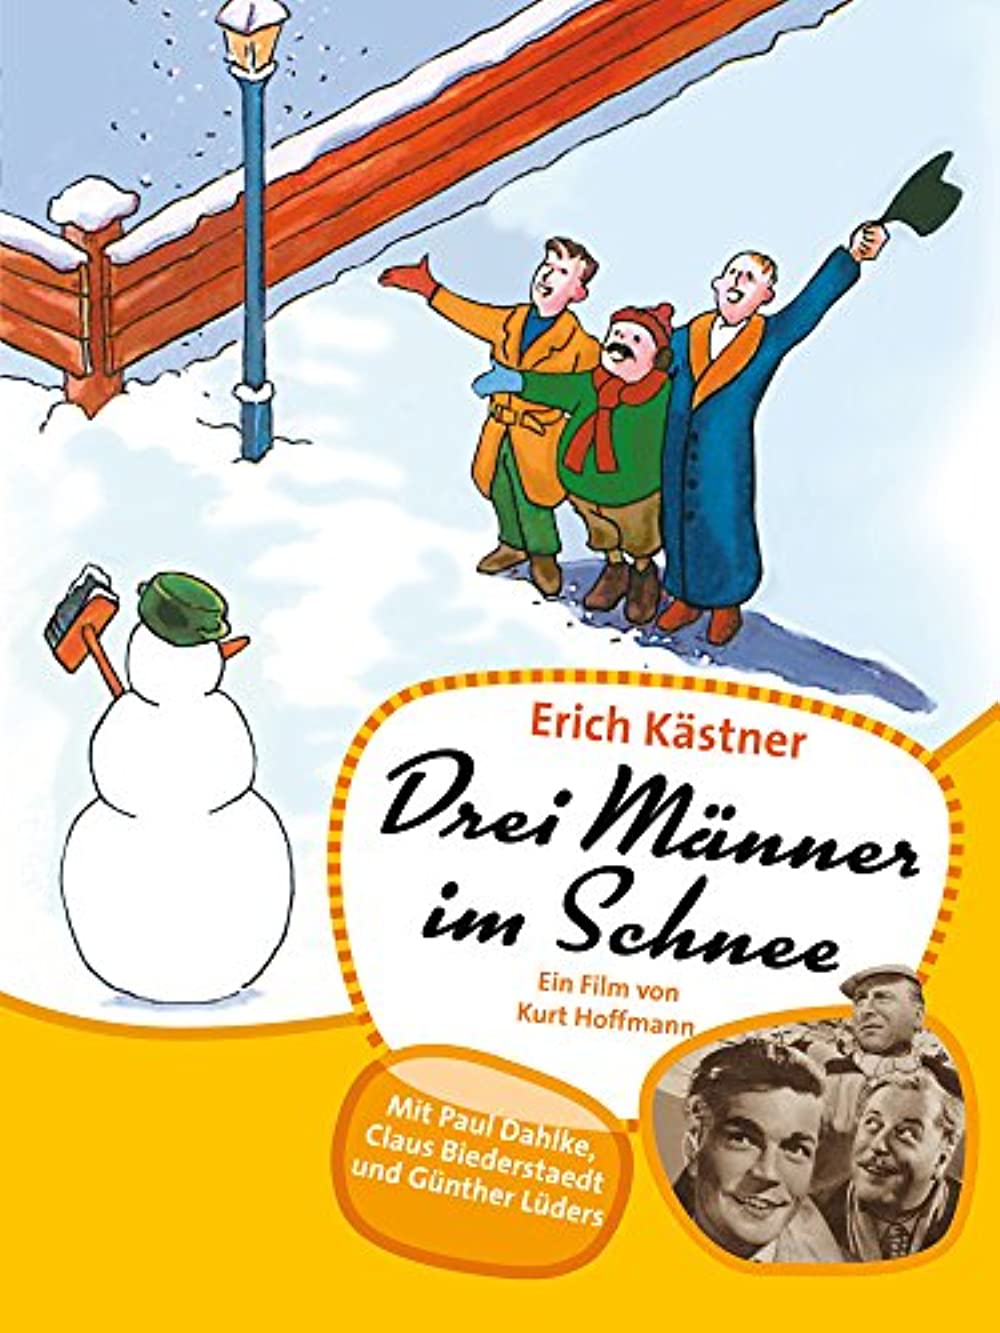 Filmbeschreibung zu Drei Männer im Schnee (1955)